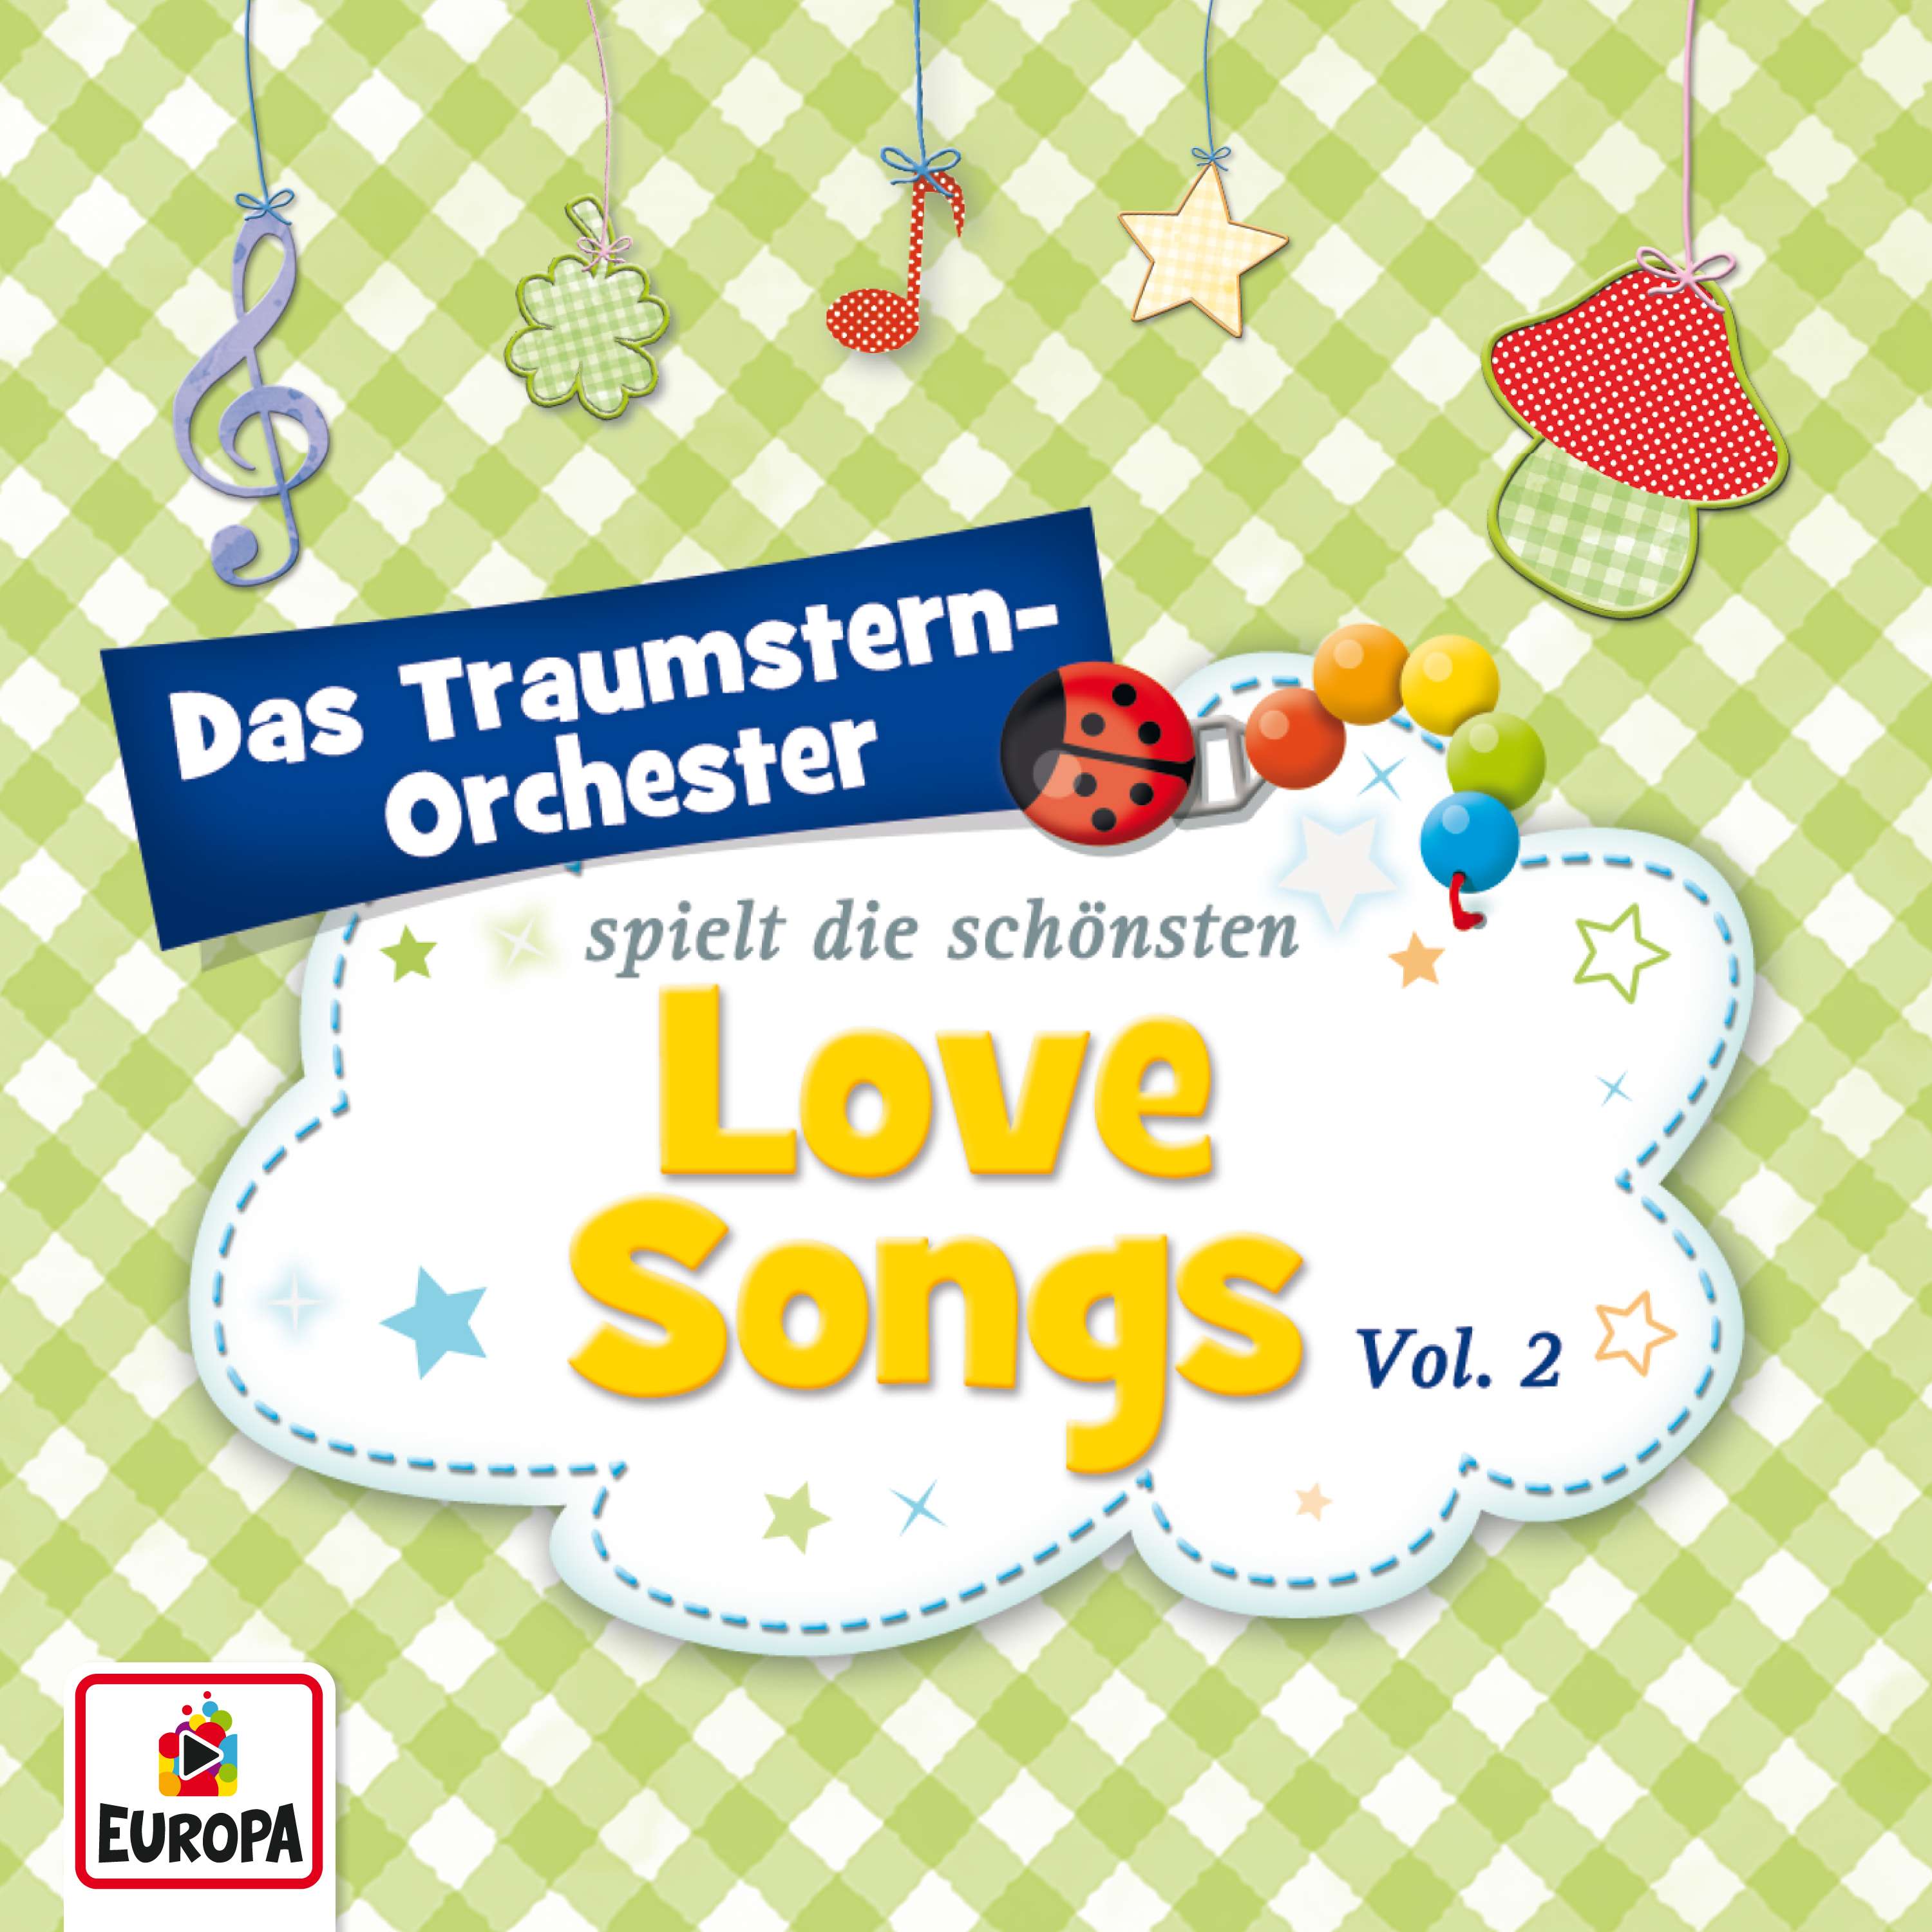 Das Traumstern-Orchester: Spielt die schönsten Love Songs, Vol. 2